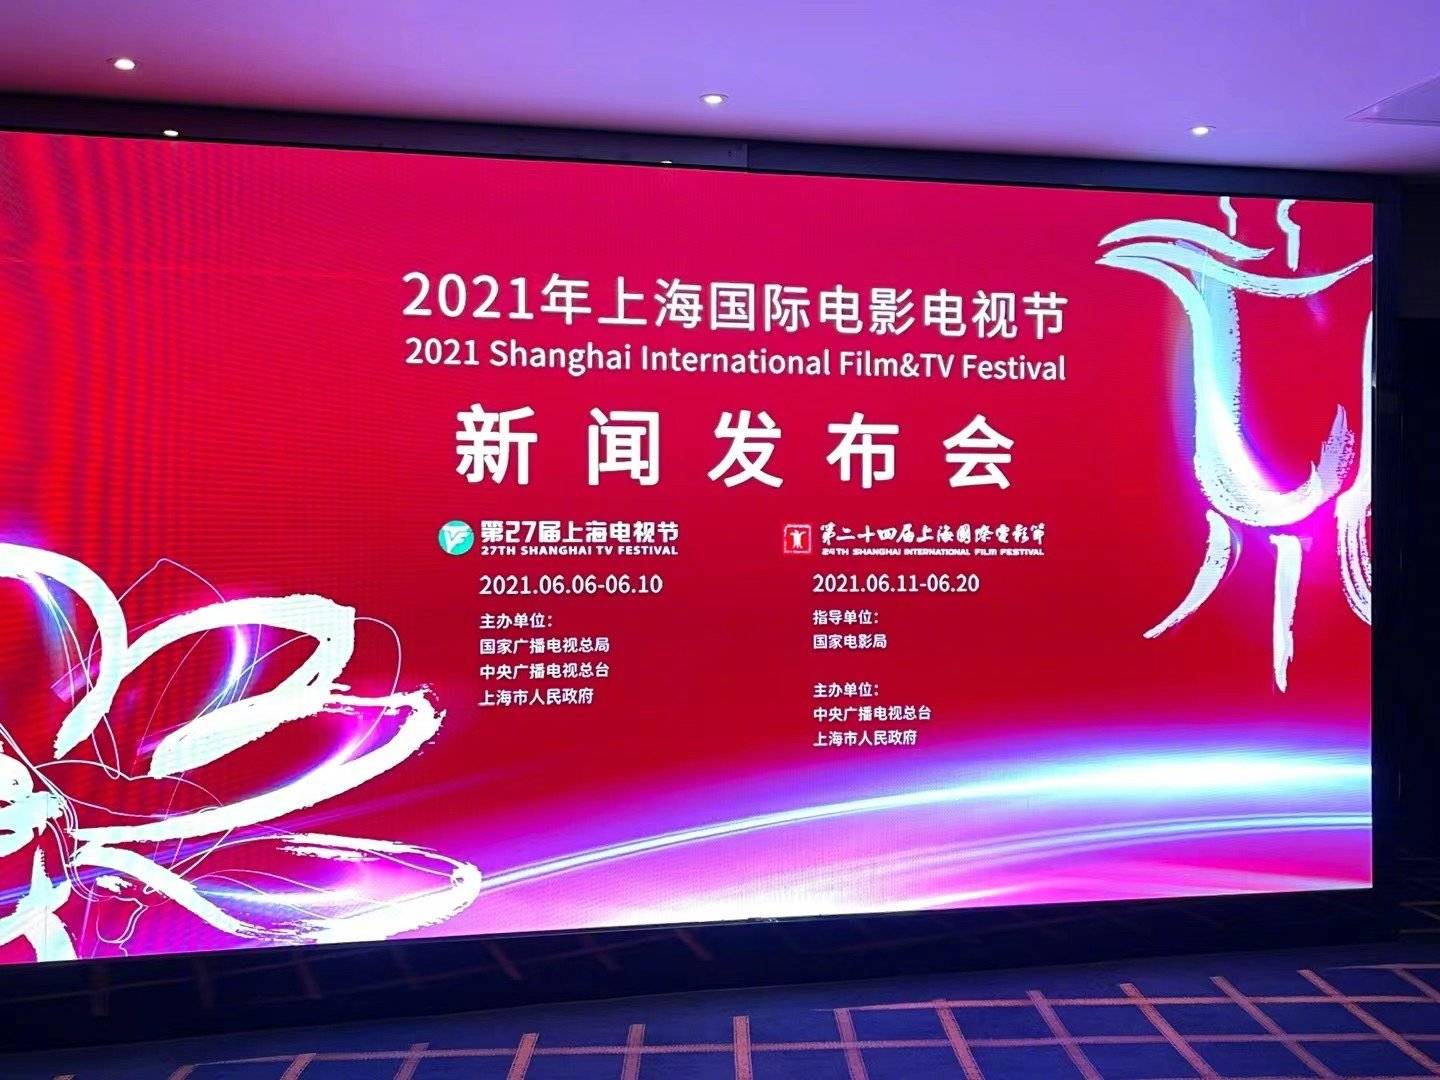 发布会上公布了本届上海国际电影节金爵奖主竞赛单元评委名单